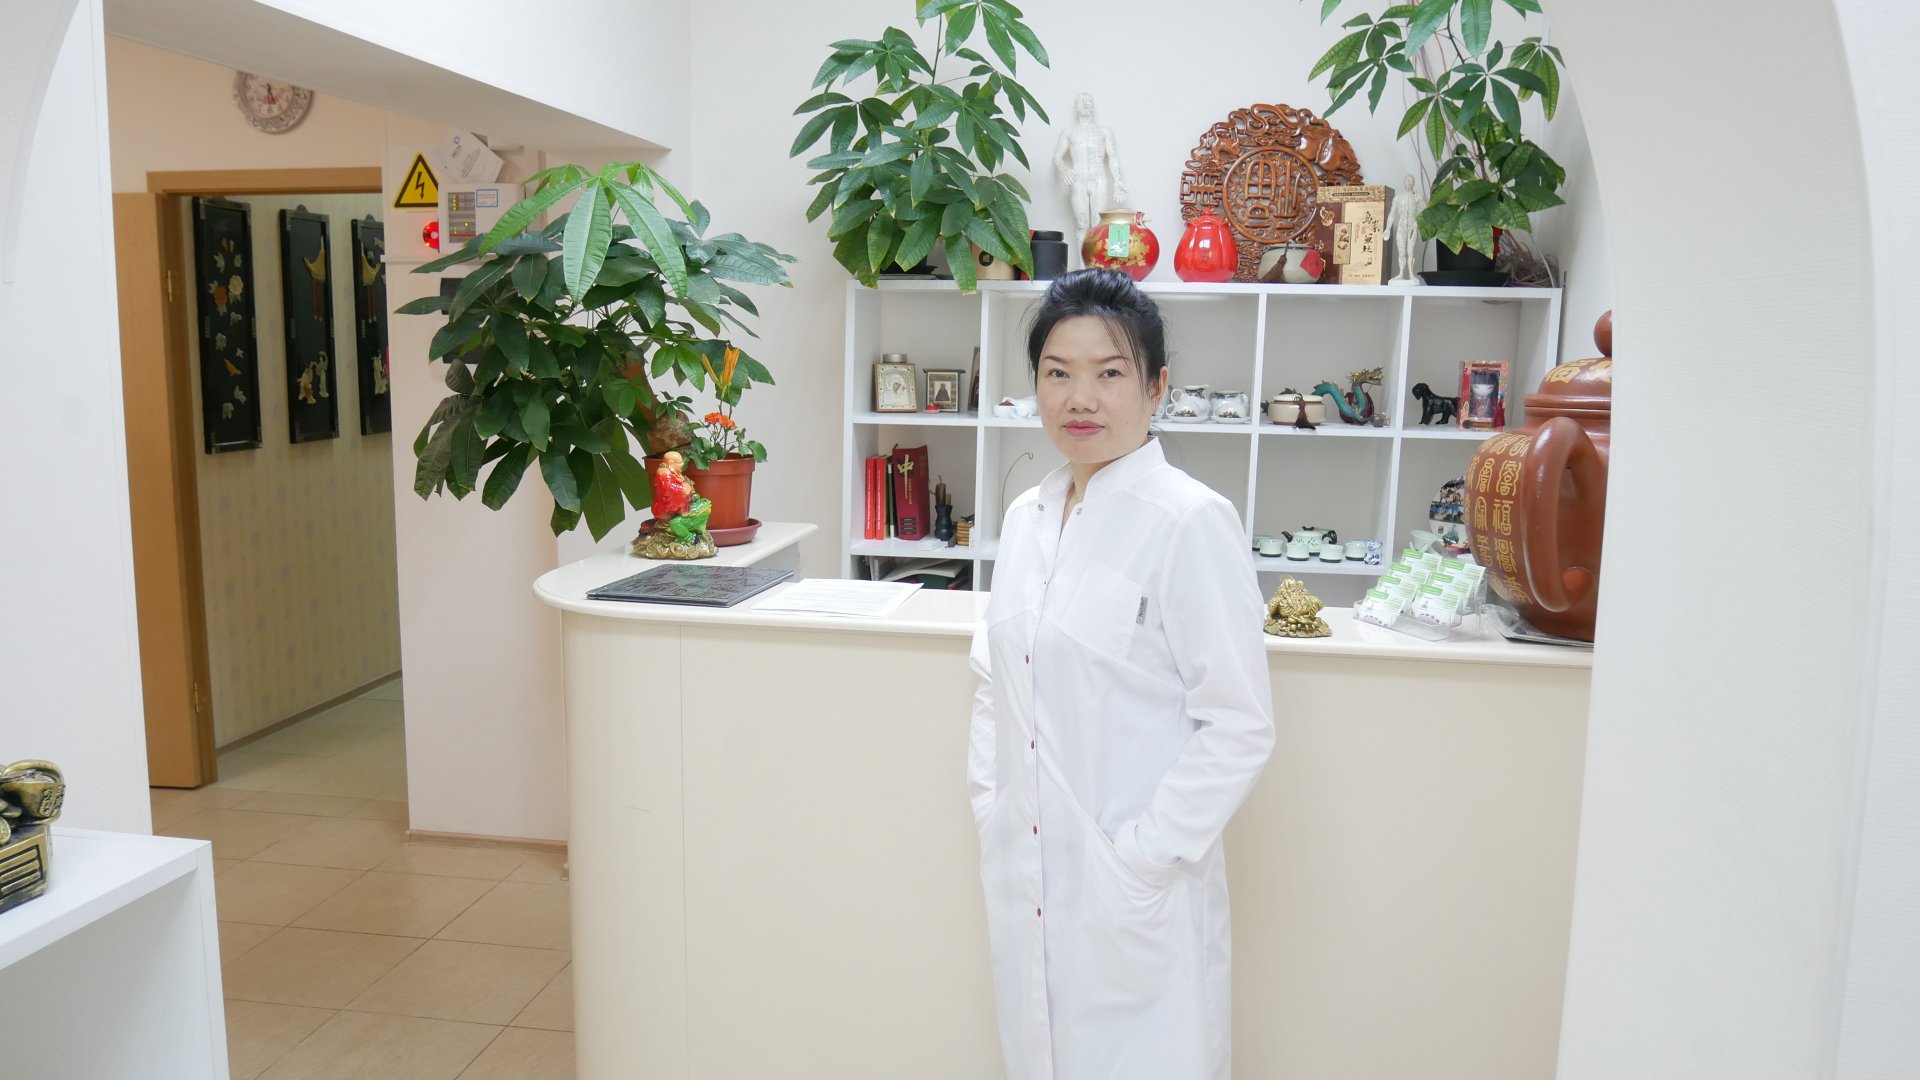 Шаолинь, китайский лечебно-оздоровительный центр, Мира проспект, 101 ст2